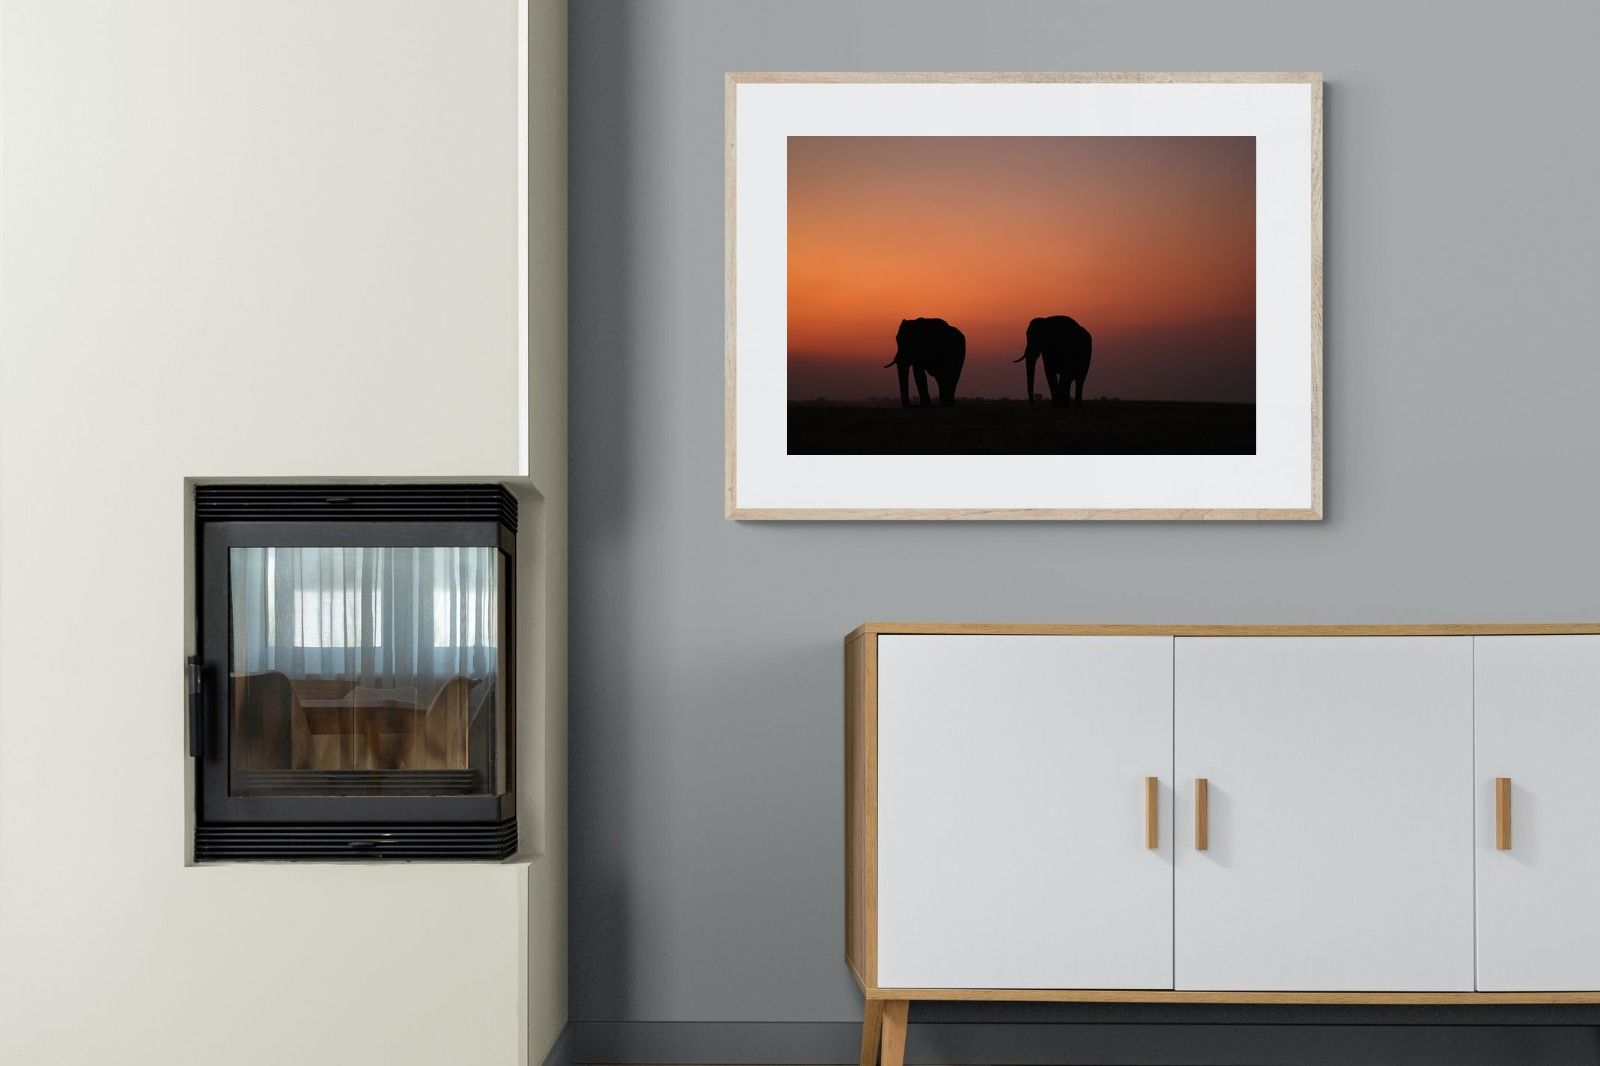 Pixalot Sunset Tuskers